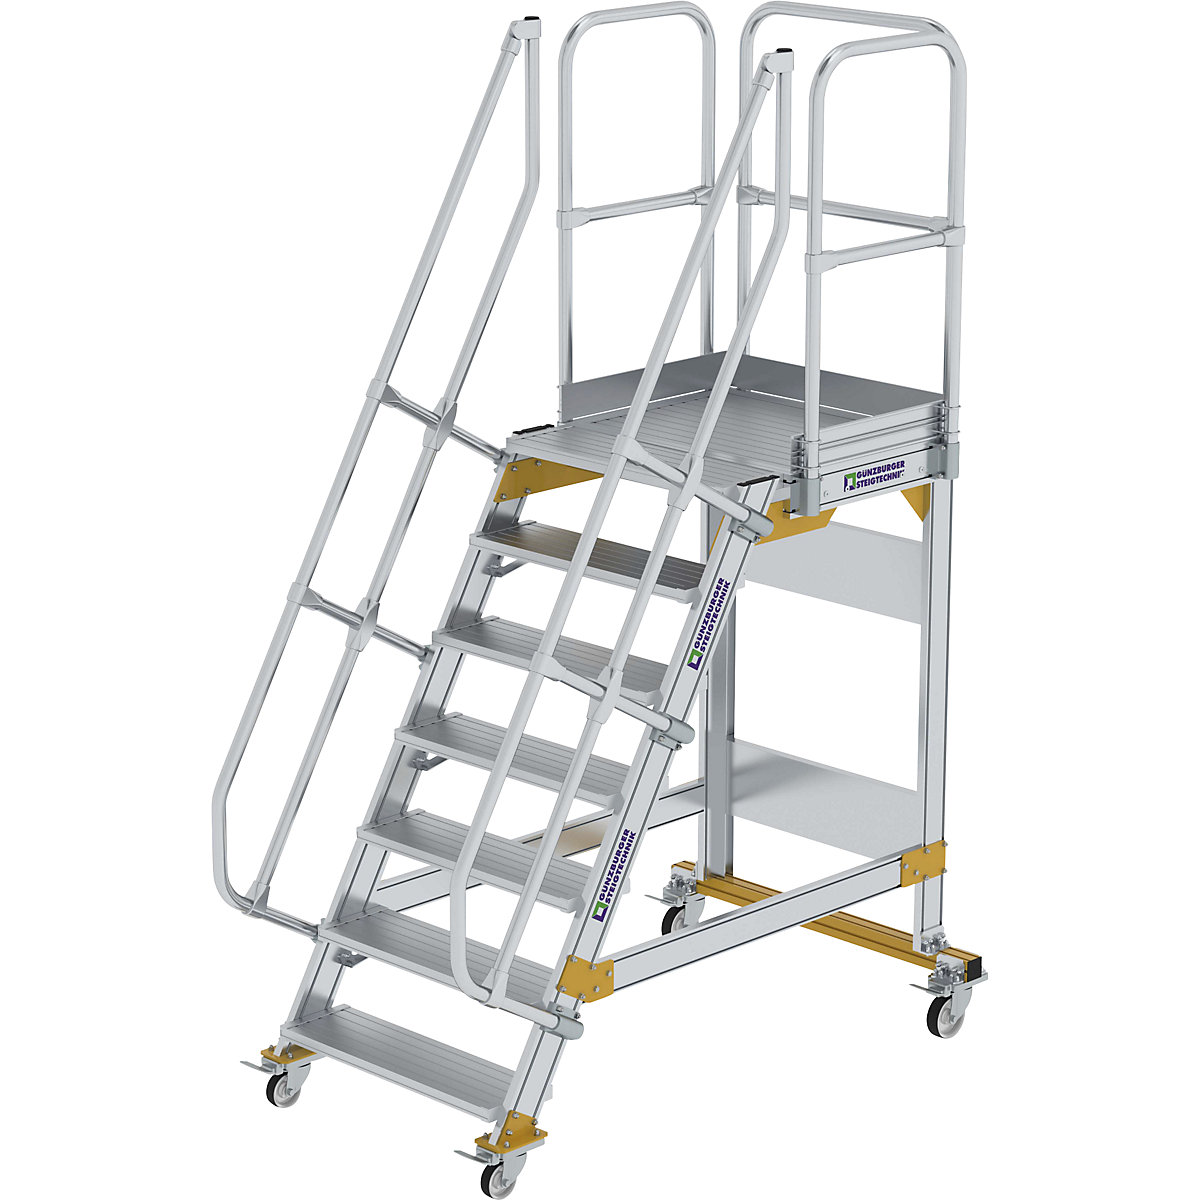 Escada de segurança móvel – MUNK, ângulo de inclinação 60°, 7 degraus-5